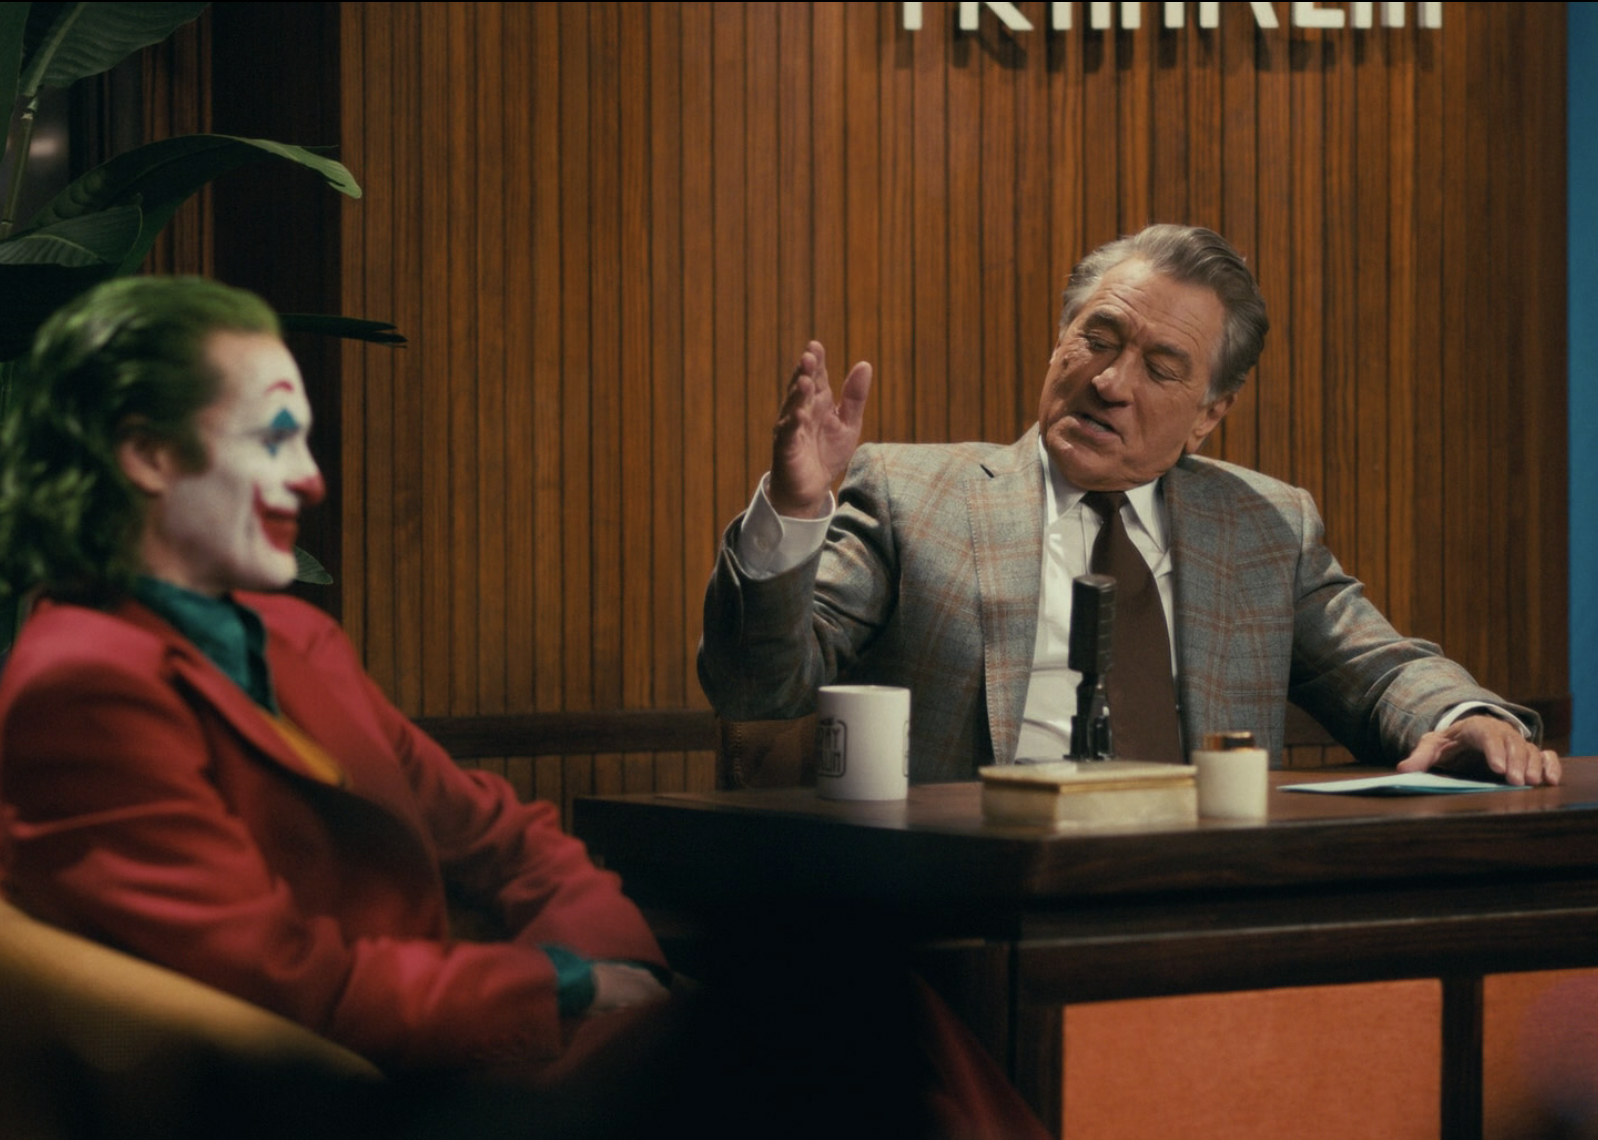 Robert De Niro and Joaquin Phoenix in "Joker"